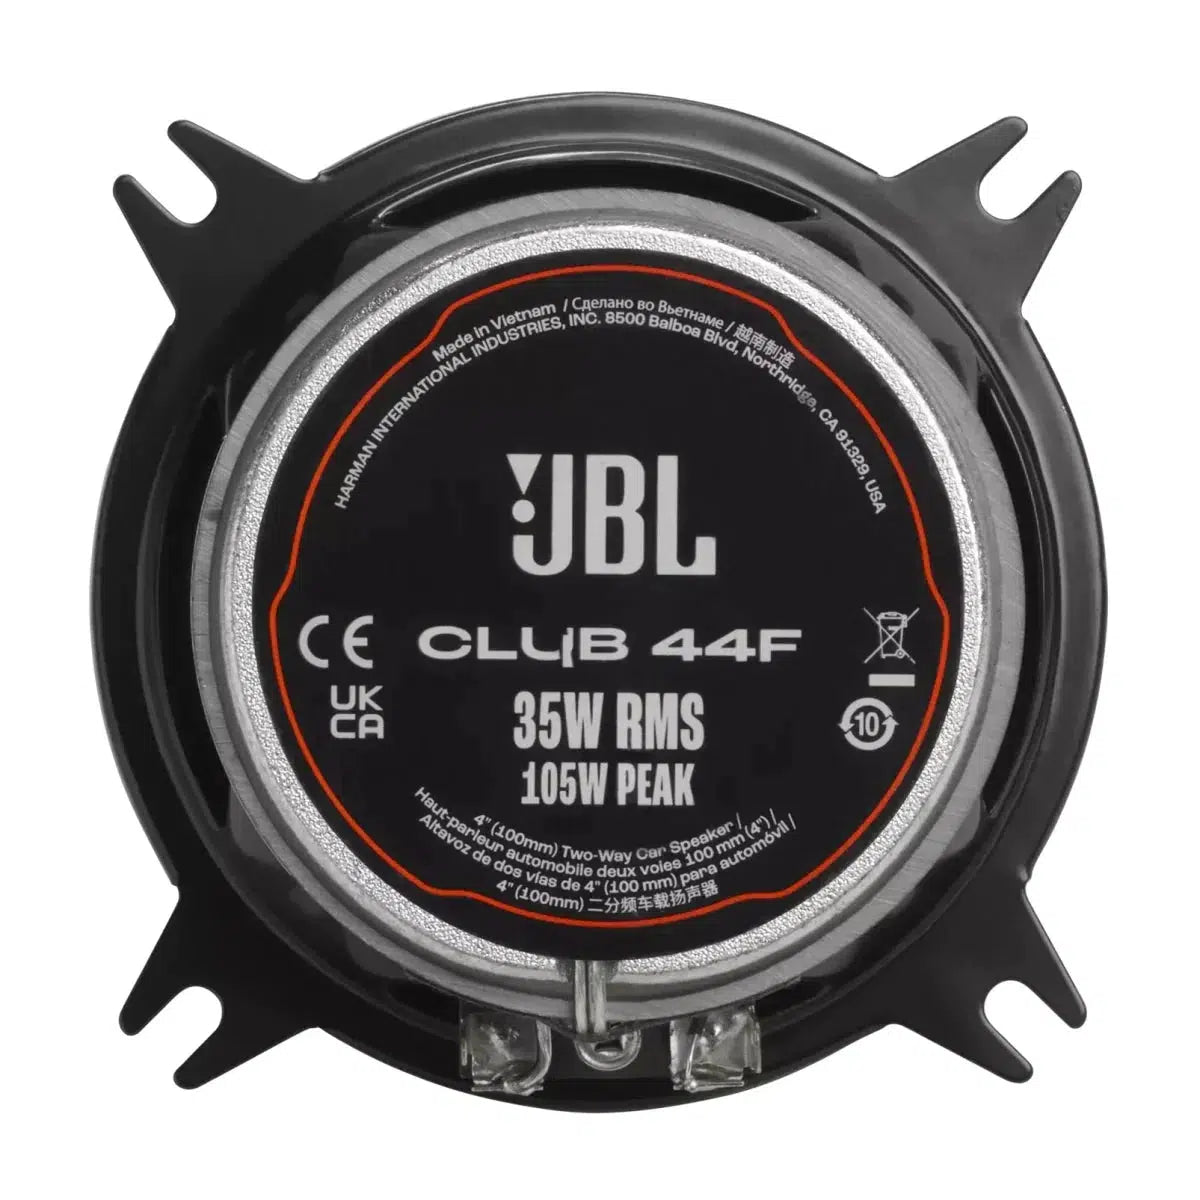 JBL-Club 44F-4" (10cm) Coaxial Loudspeaker-Masori.de